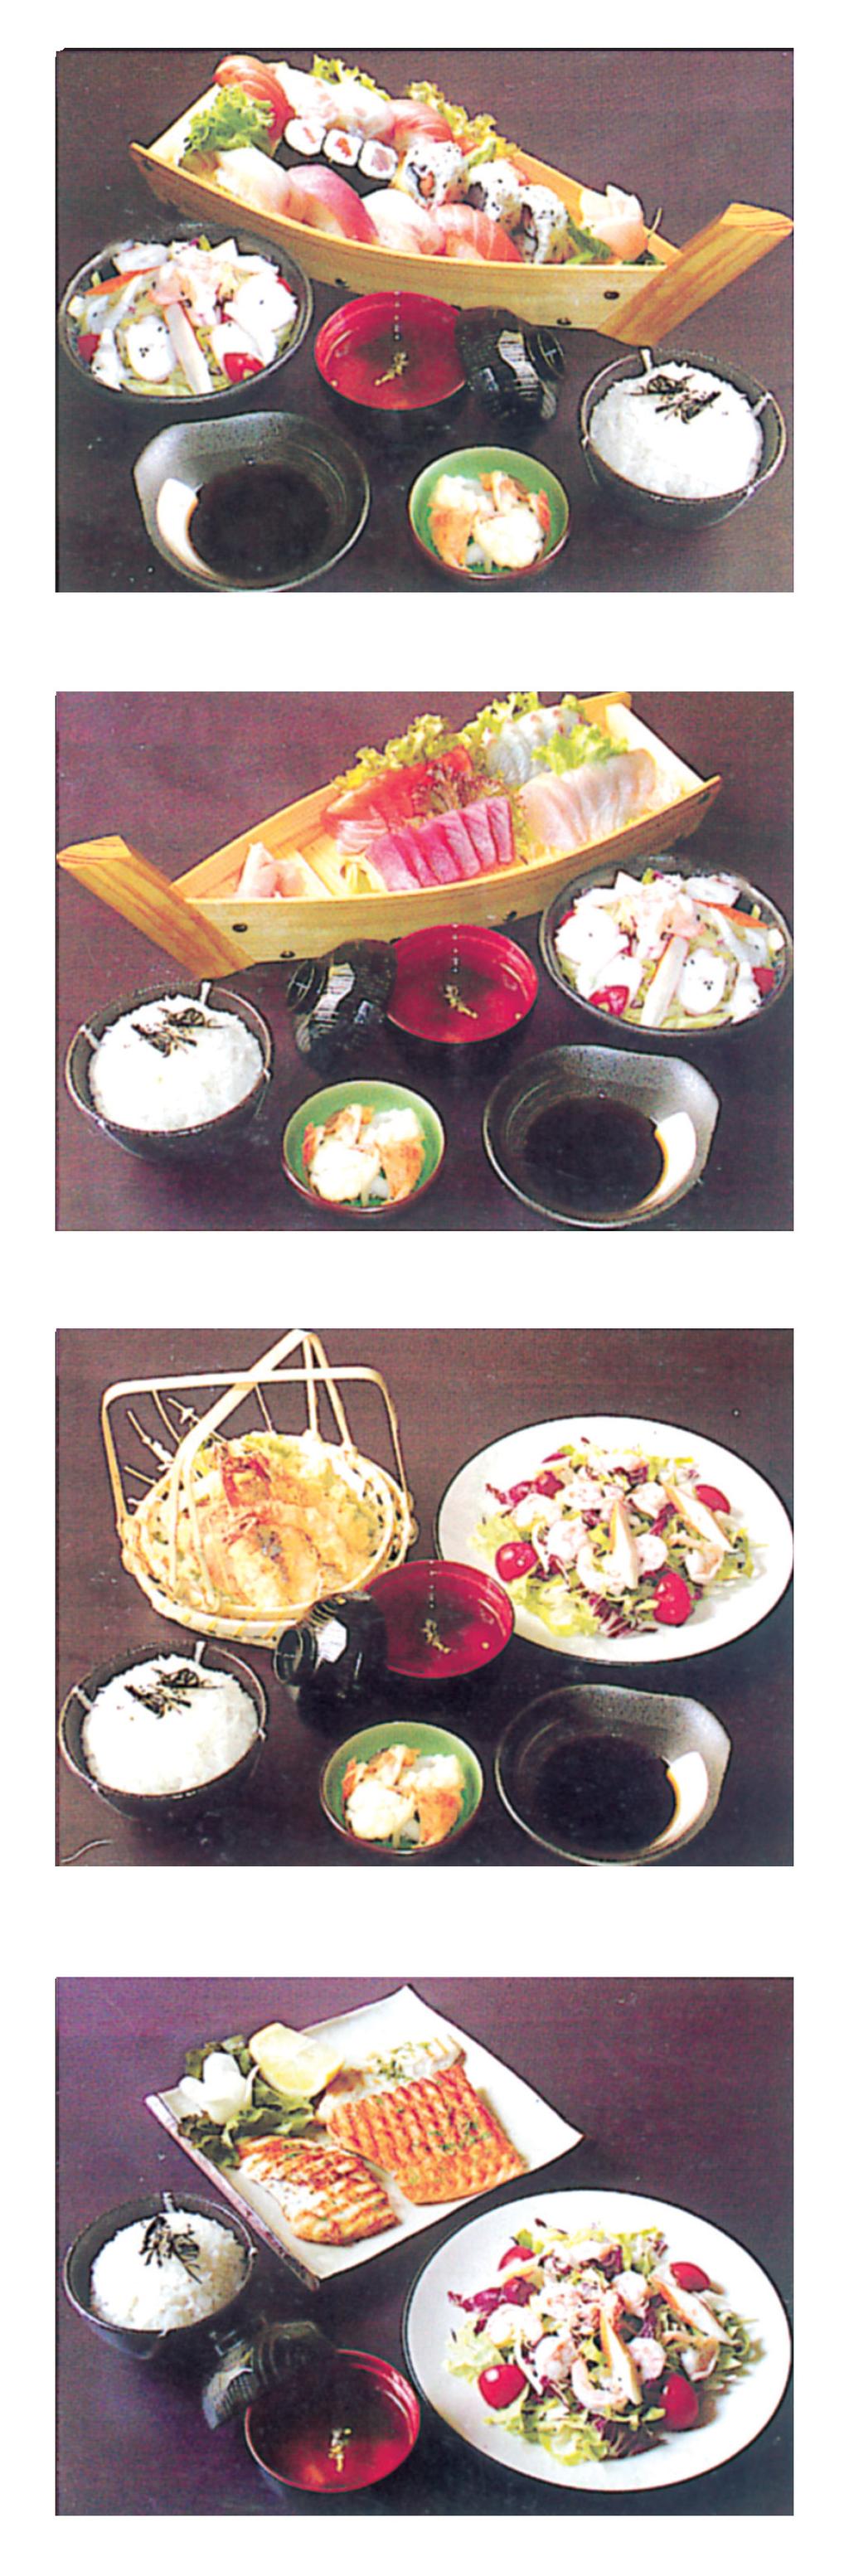 MENU FISSO MENU A - SUSHI Misto di sushi Insalata di mare Zuppa di miso Riso con verdura 20,00 MENU B - SASHIMI Misto di sashimi Insalata di mare Zuppa di miso Riso con verdura 22,00